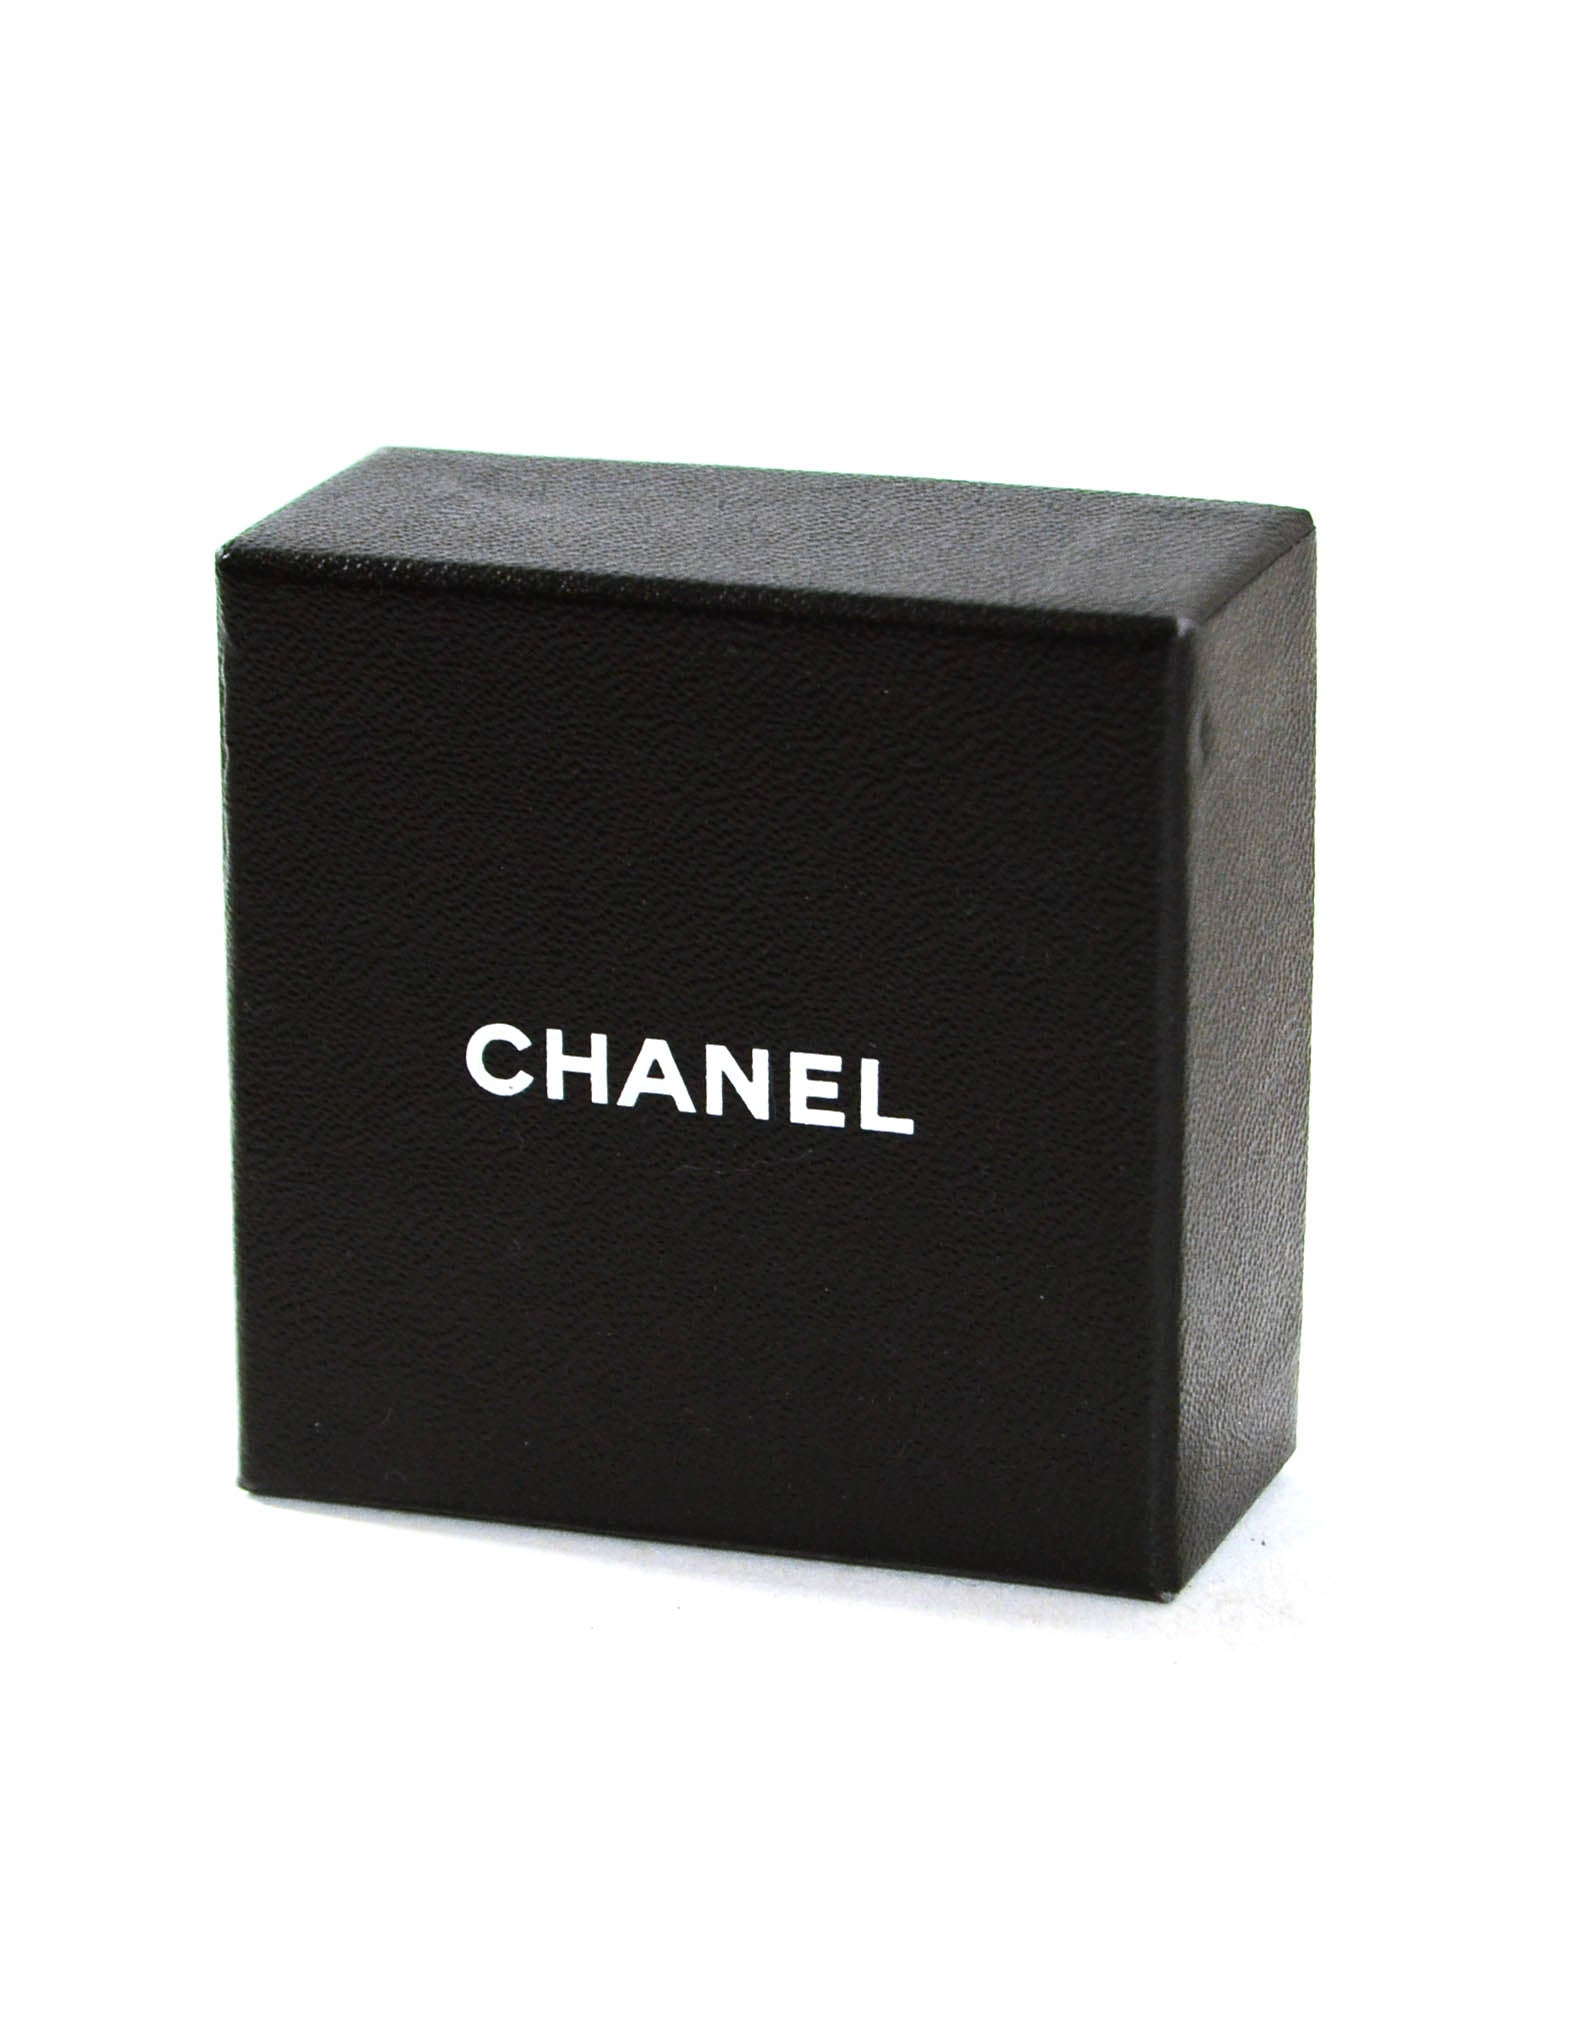 Chanel Black Grey Crystal Bow Brooch w/ CC